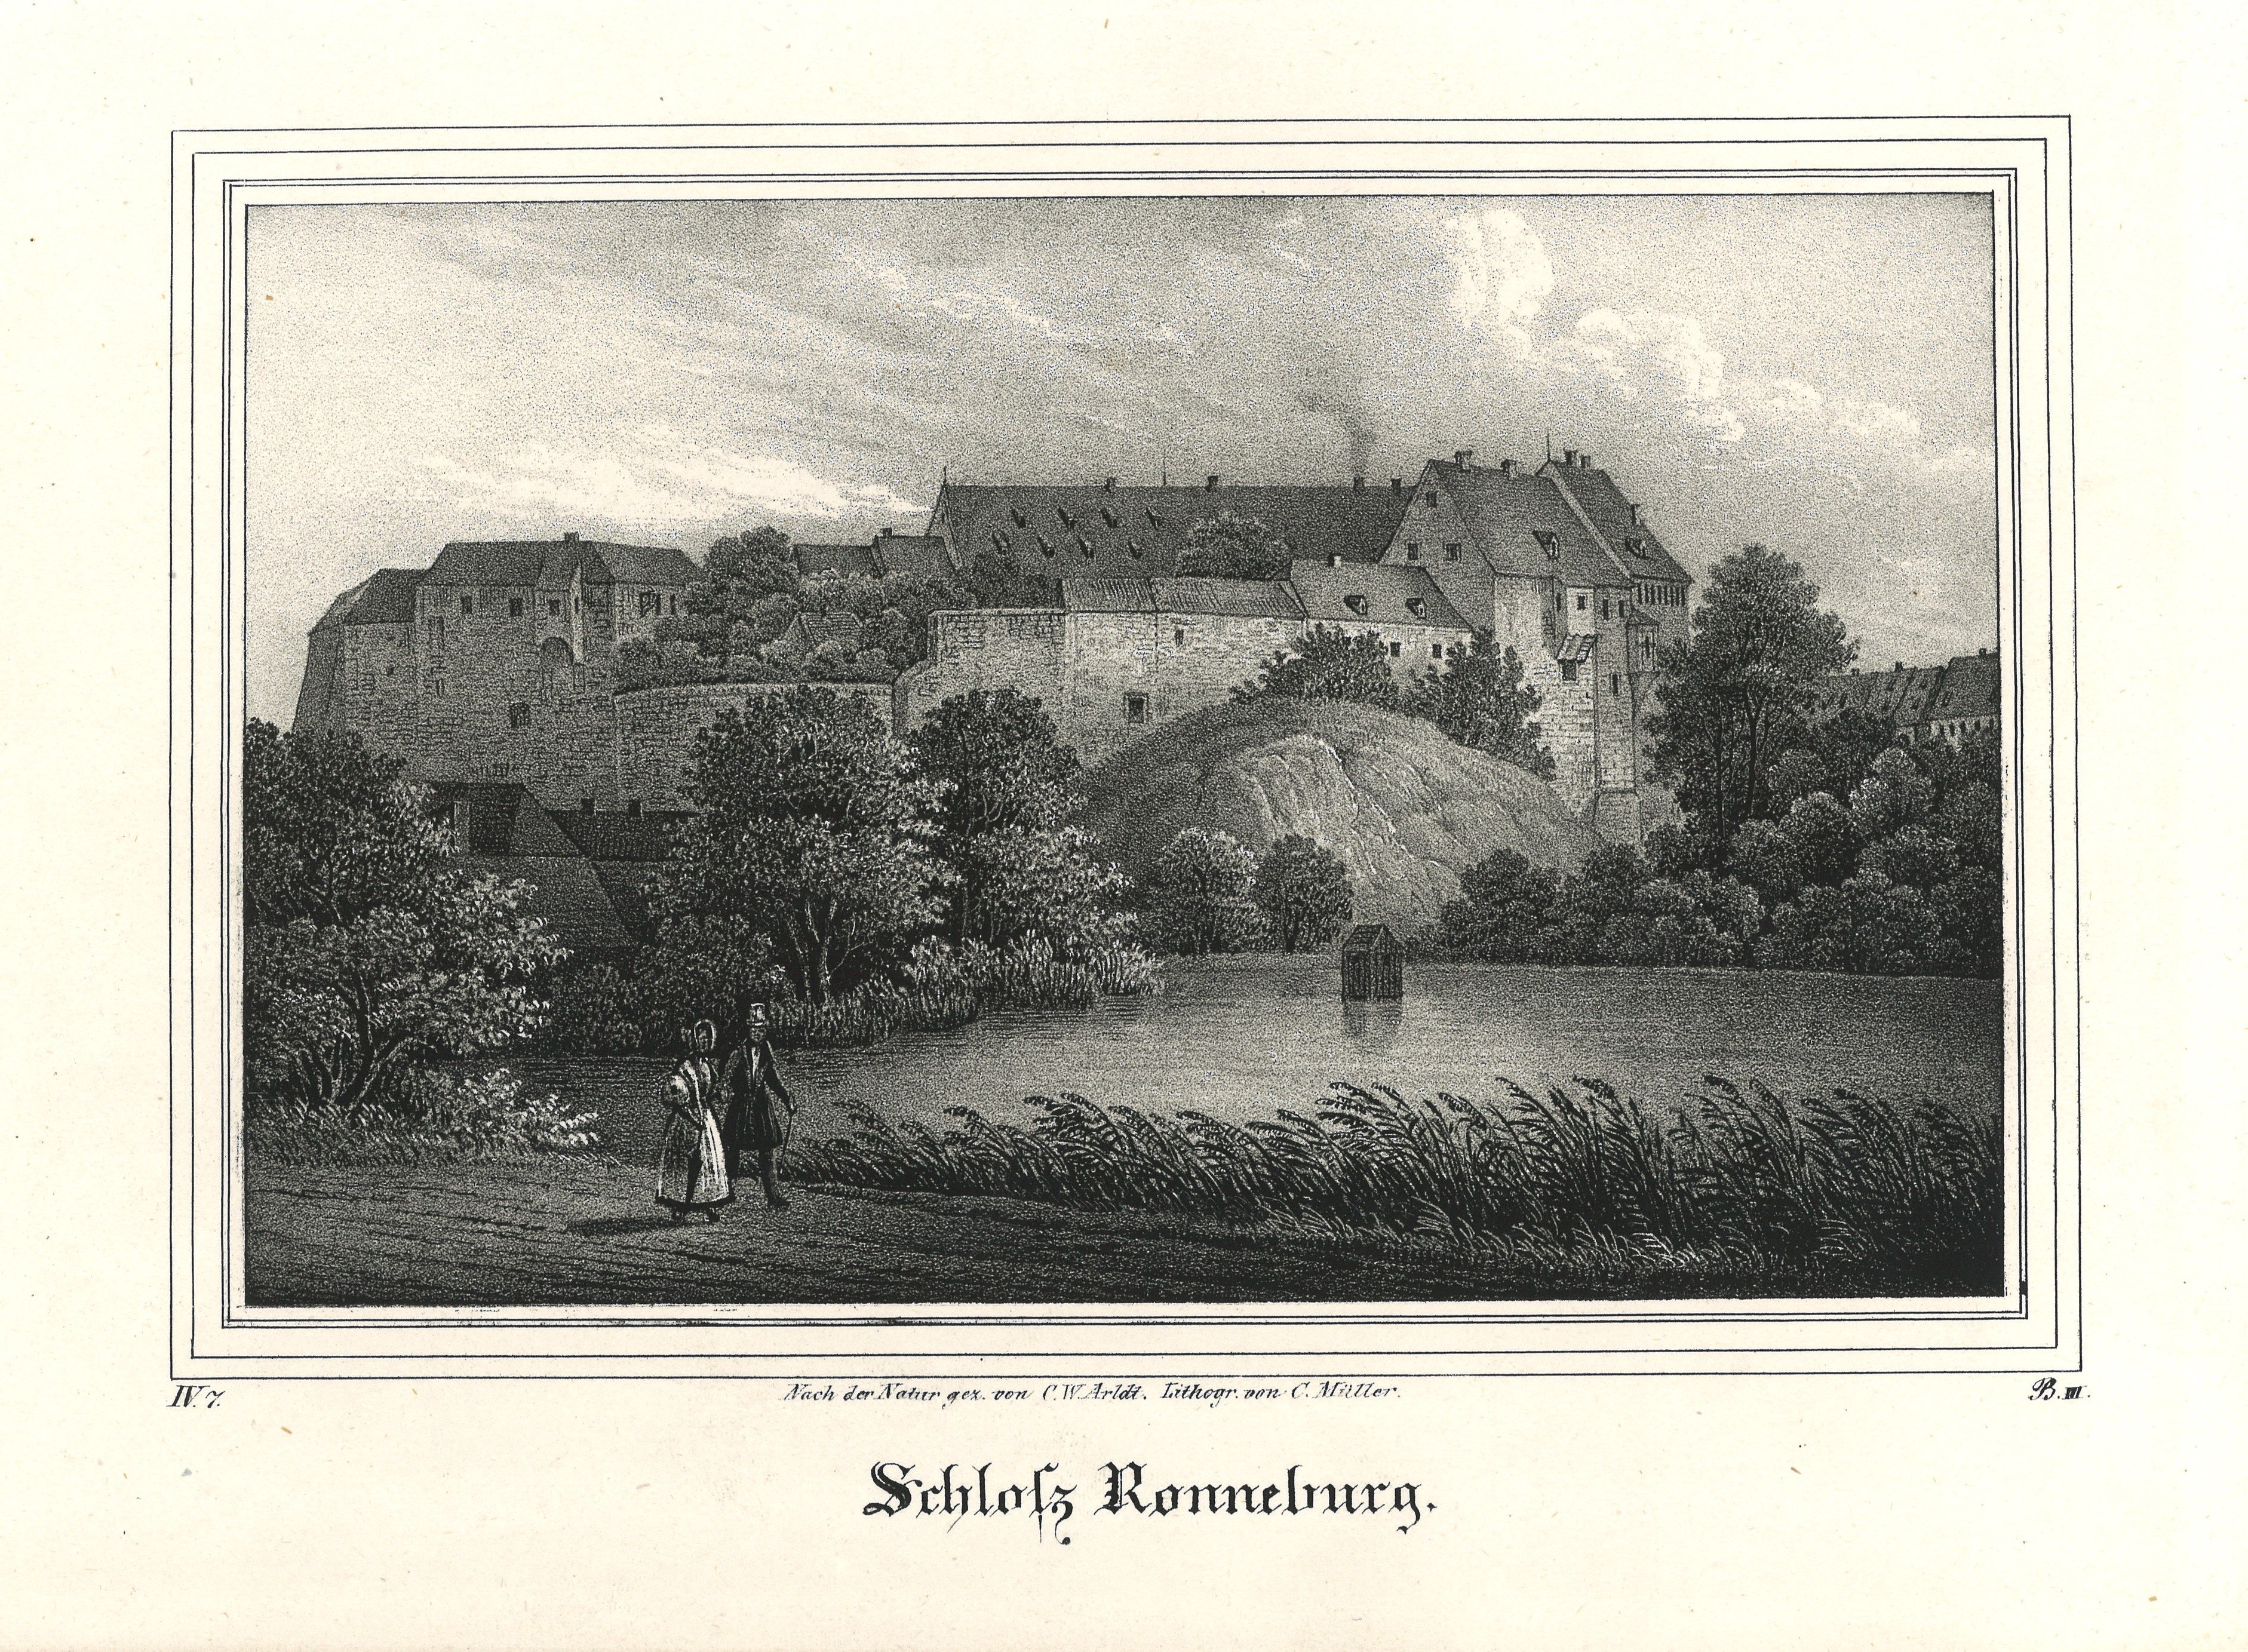 Ronneburg (Thüringen): Schloss Ronneburg (Landesgeschichtliche Vereinigung für die Mark Brandenburg e.V., Archiv CC BY)